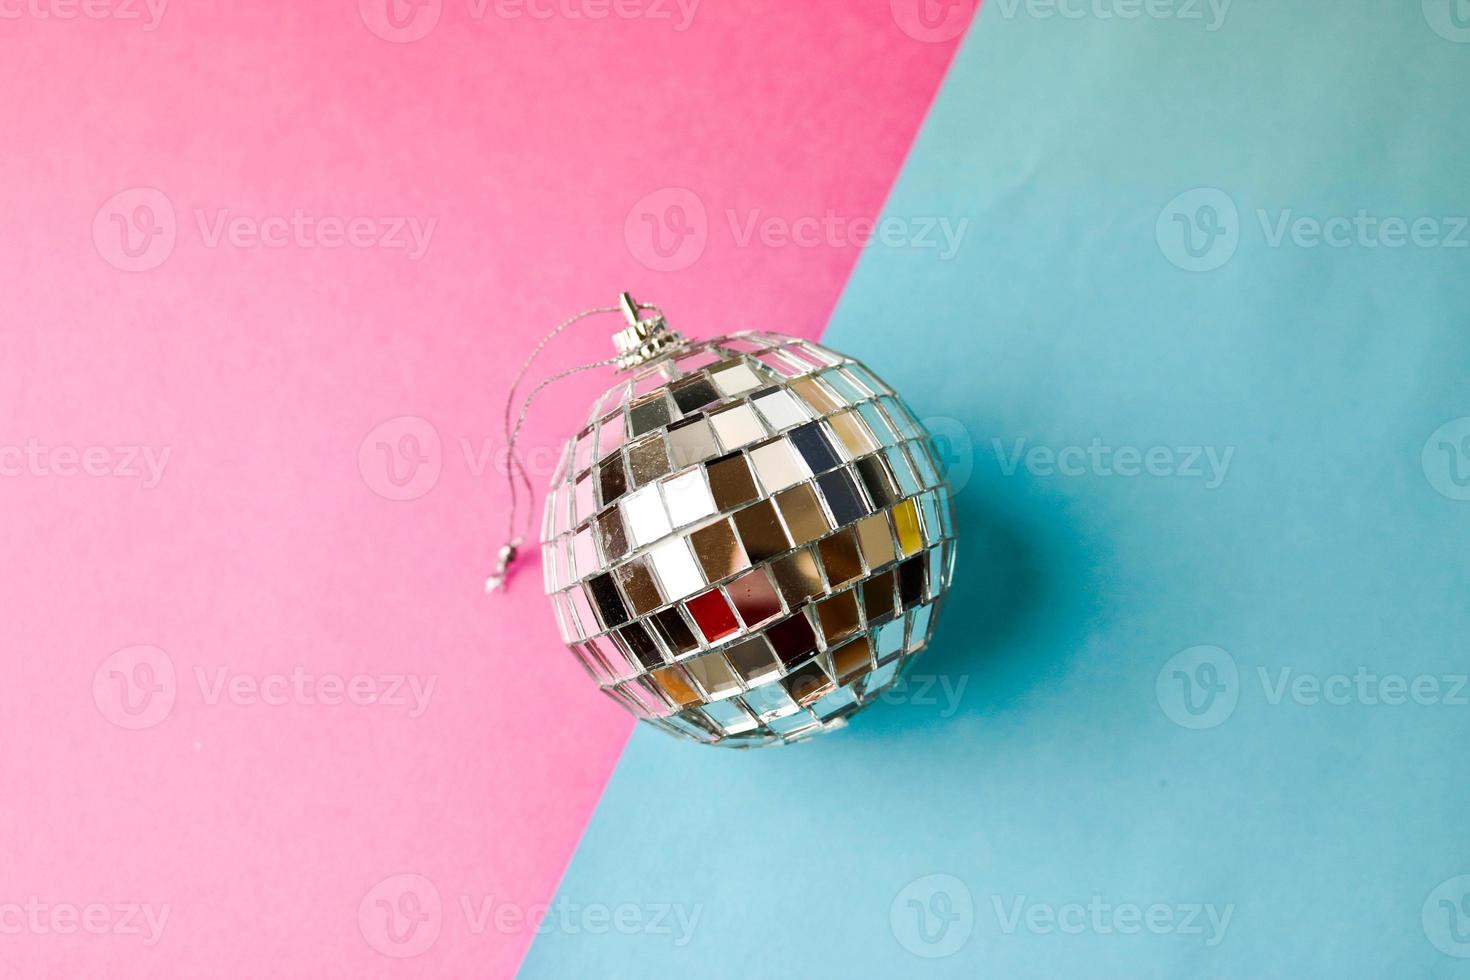 silber spiegel musical club disco ball klein rund glas winter glänzend dekorativ schön weihnachten festlich weihnachtskugel, weihnachtsspielzeug verputzt auf glitzern auf einem grau rosa lila hintergrund foto